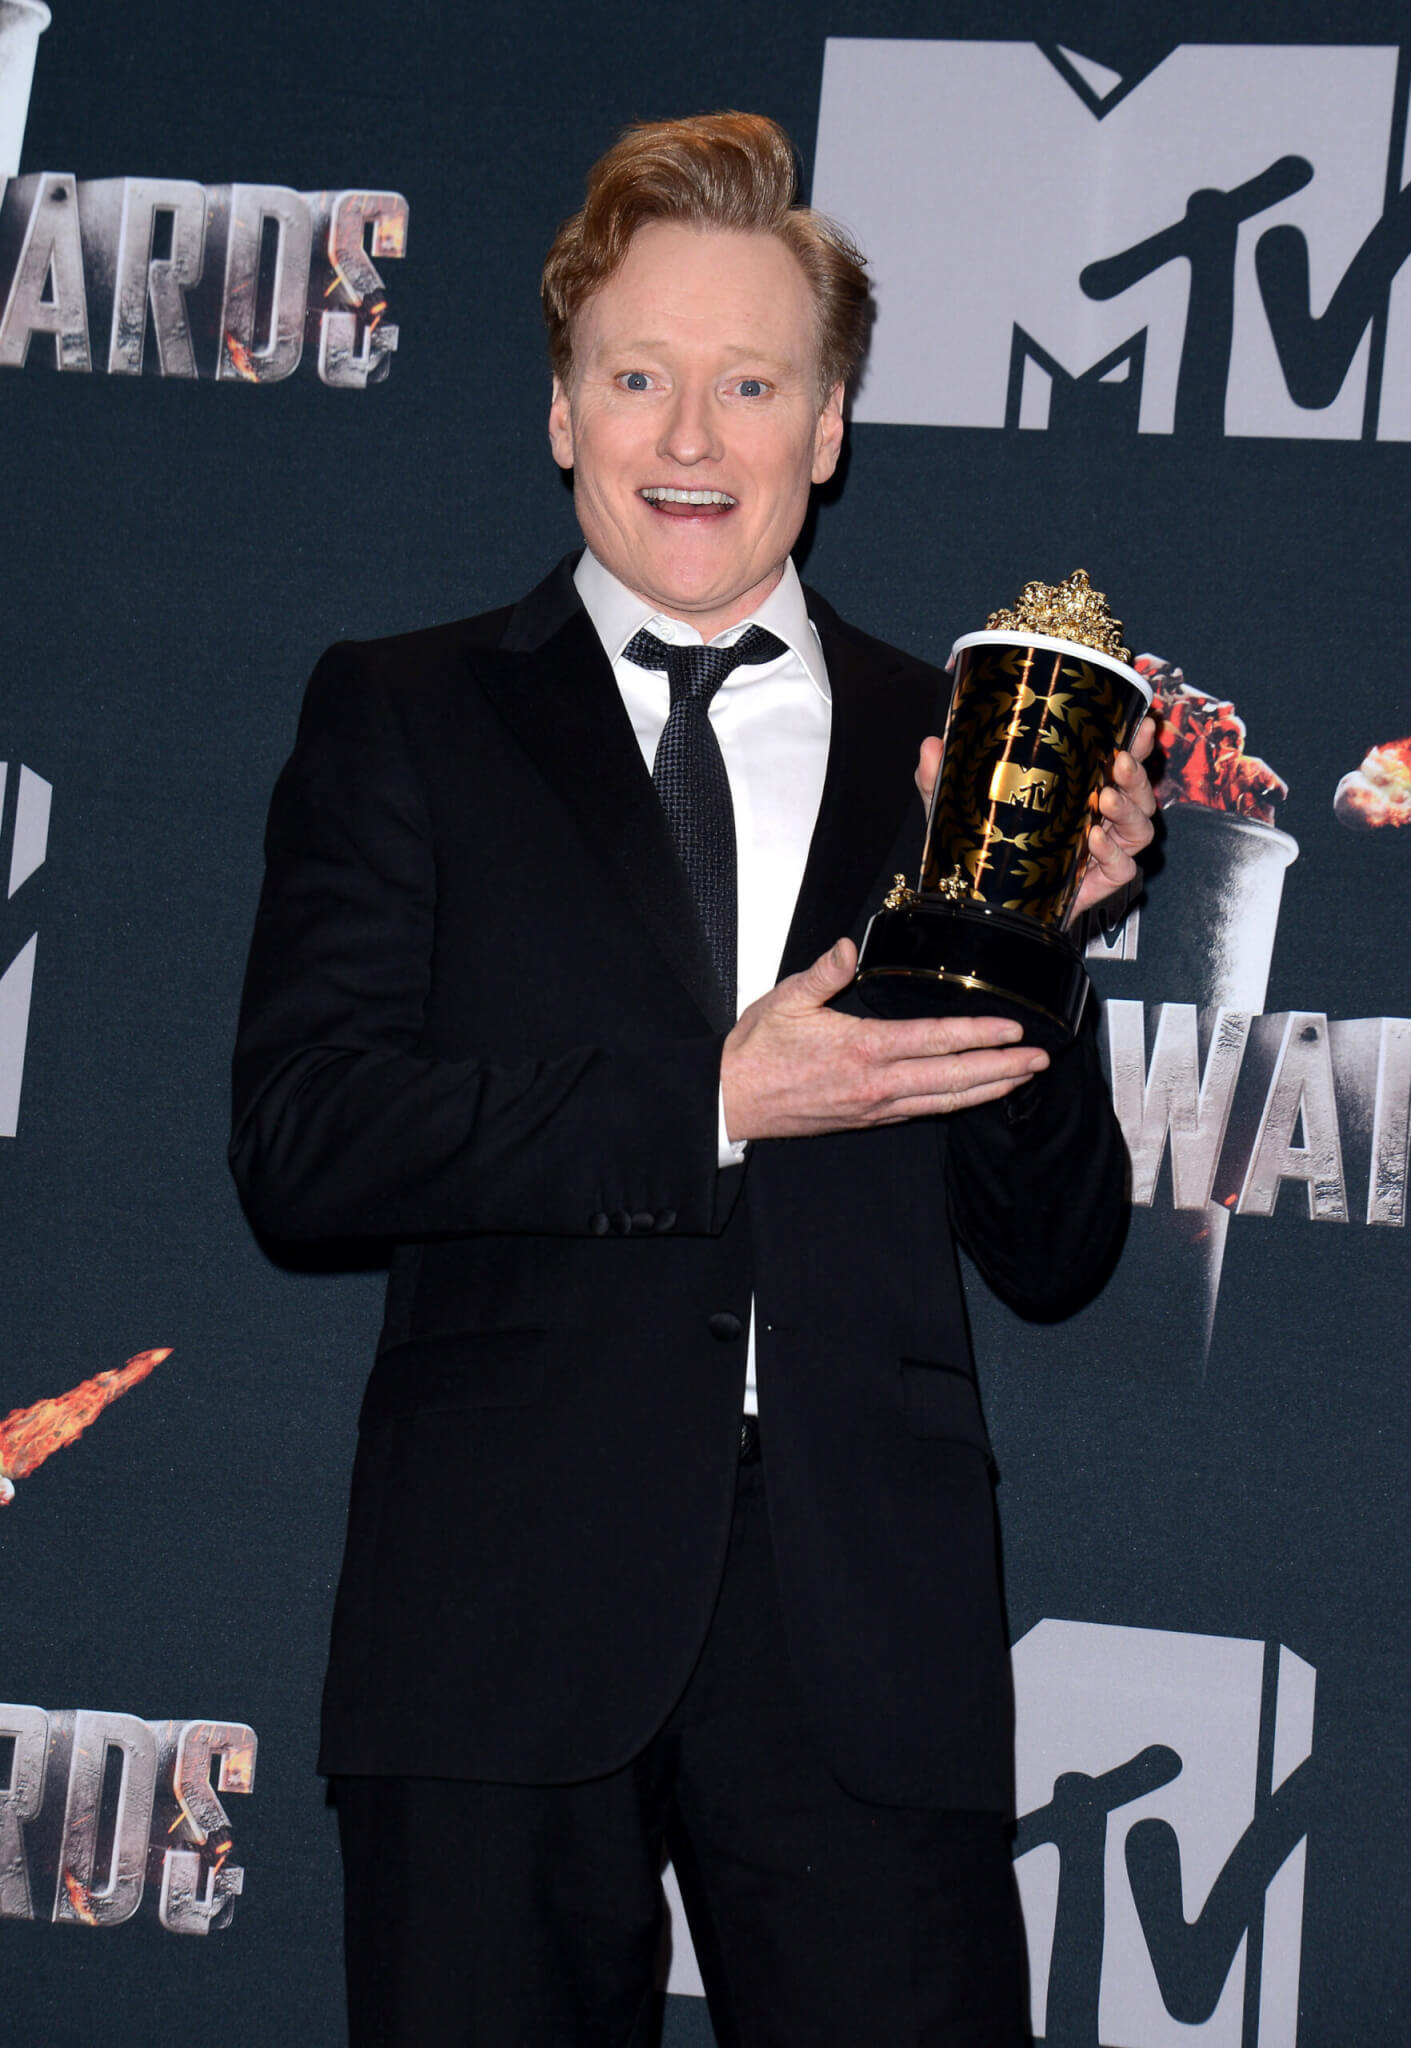 Conan O'Brien at the 2014 MTV Movie Awards